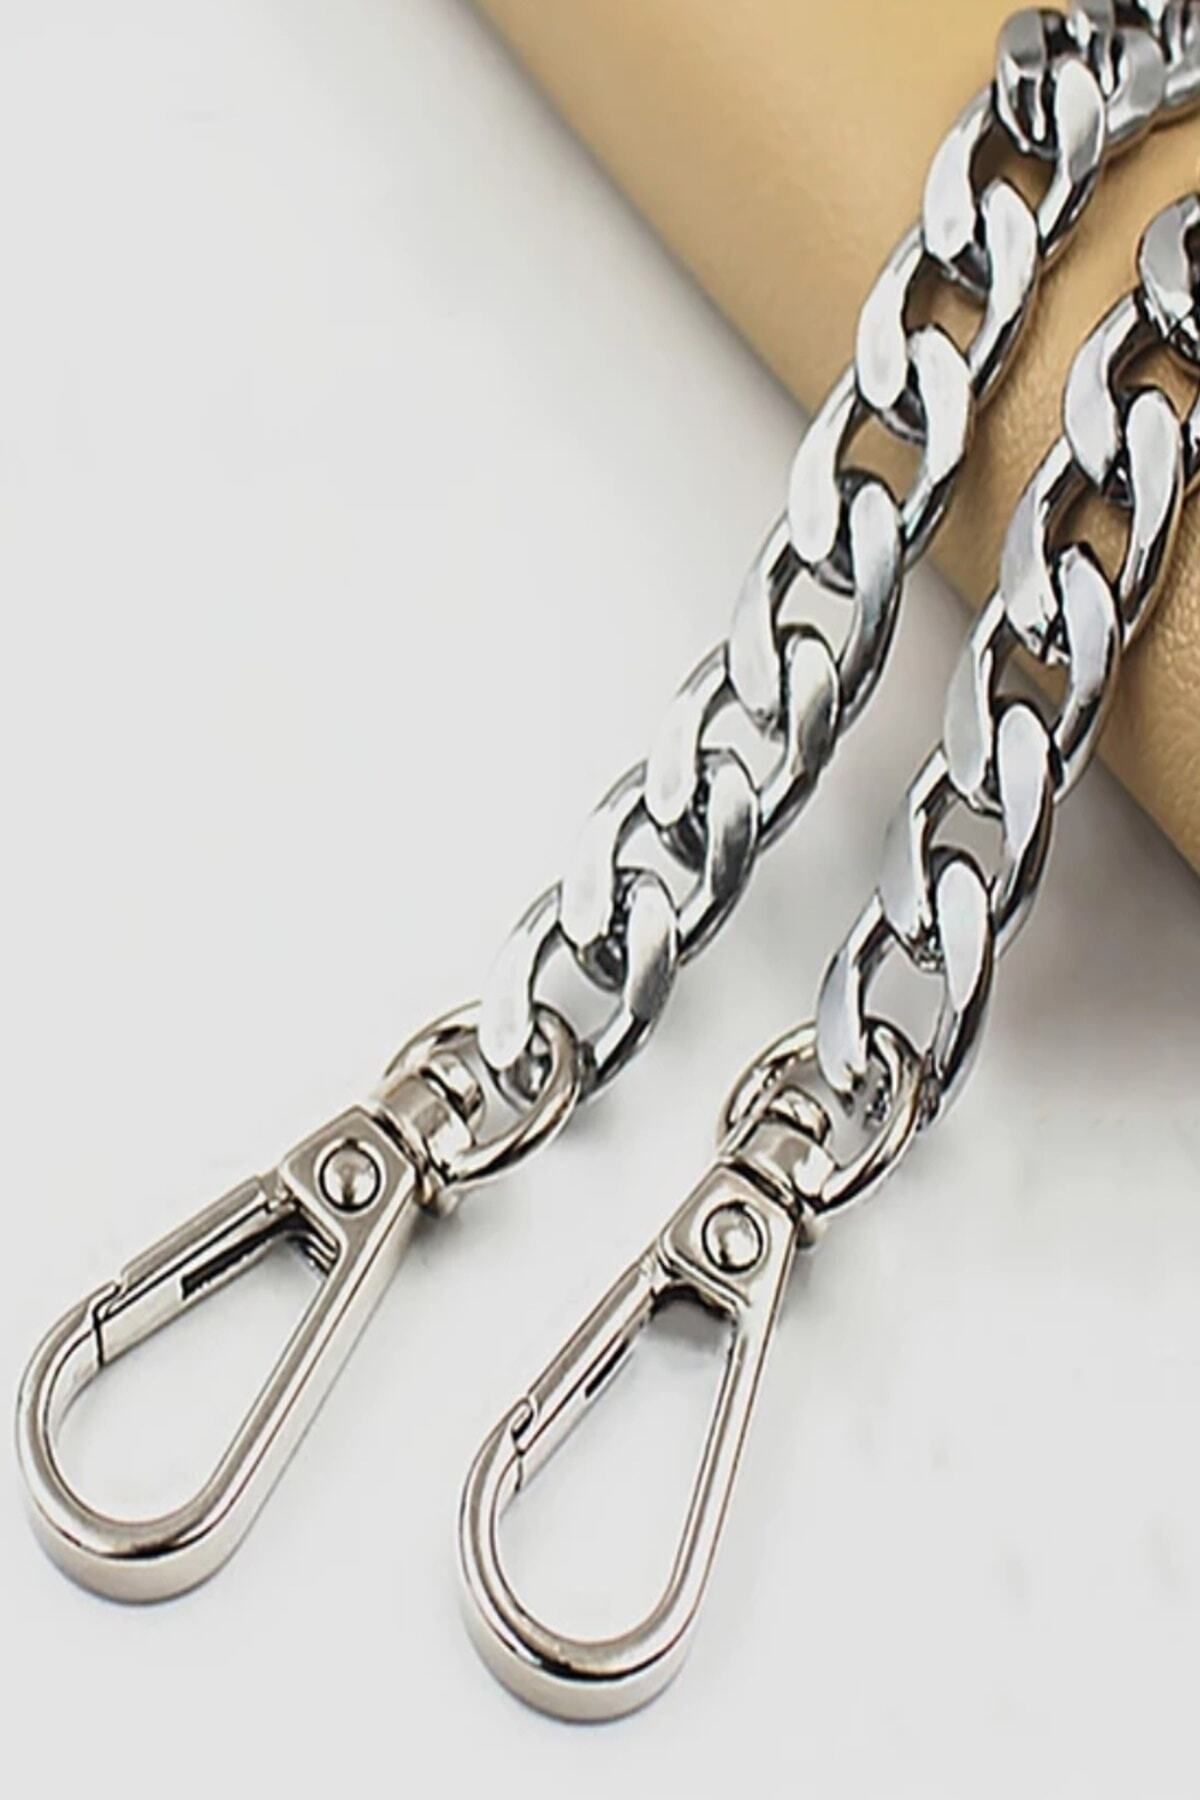 Nildenhobim Yaylı Kancalı Gümüş Renk Zincirli Çanta Zincir Set - Zincir Uzunluk : 110 Cm